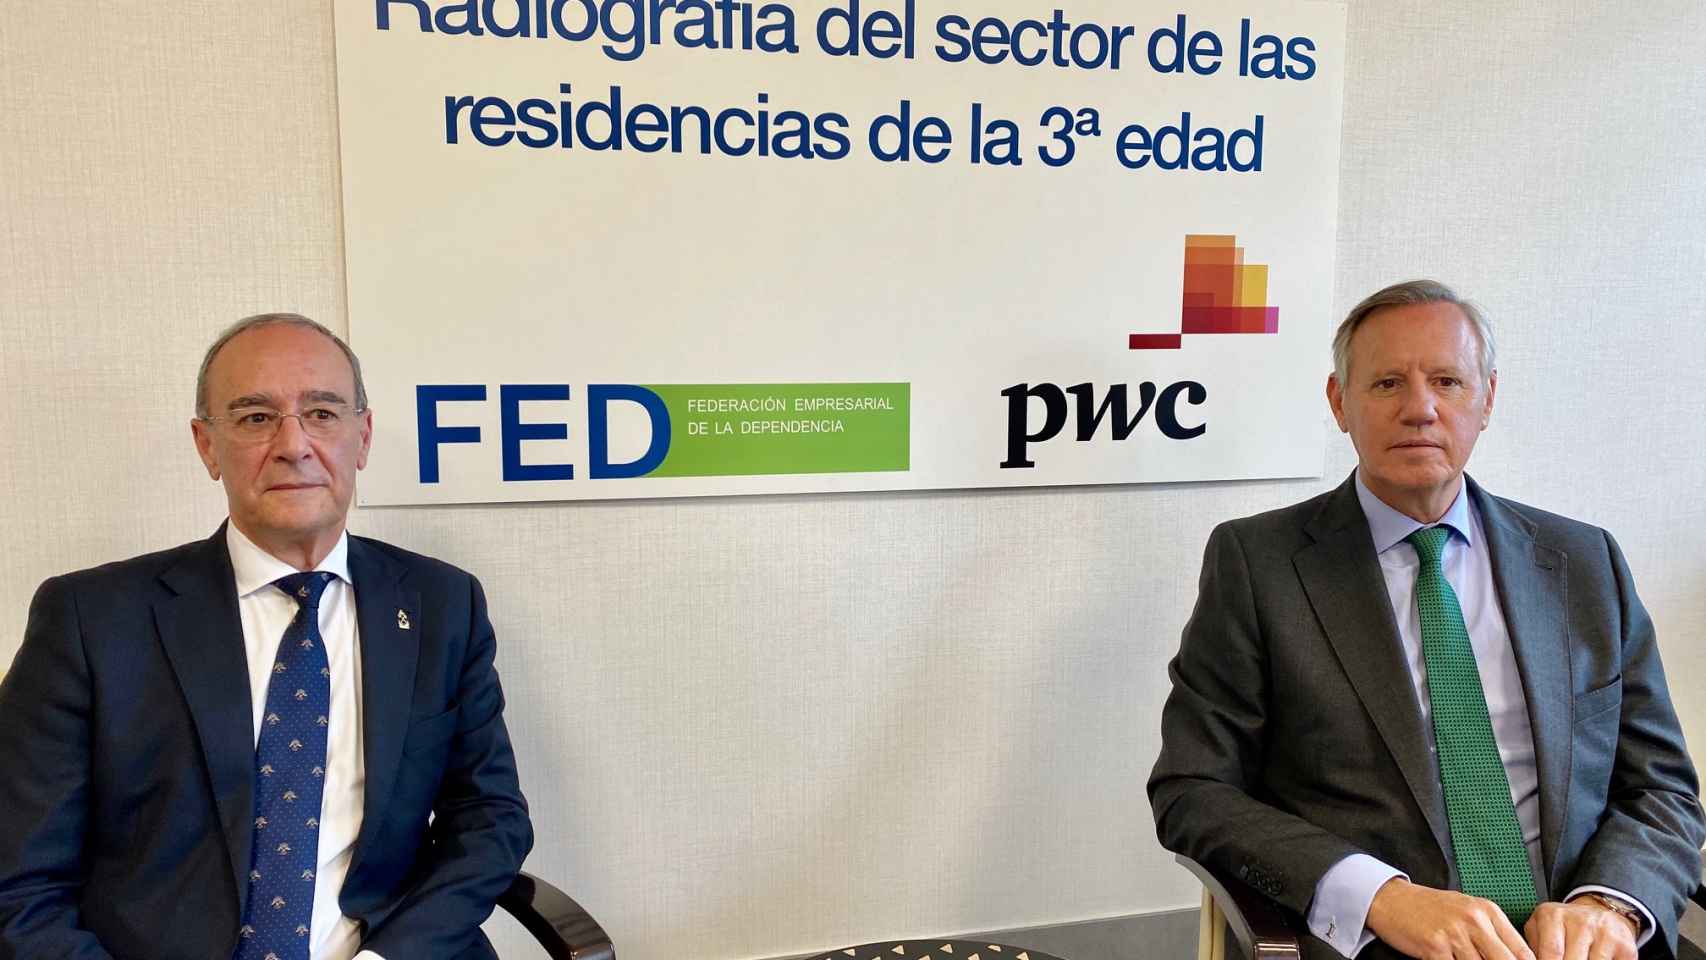 De izq. a derecha: Alberto Echevarría, secretario general de la FED, e Ignacio Fernández-Cid, presidente de la FED.